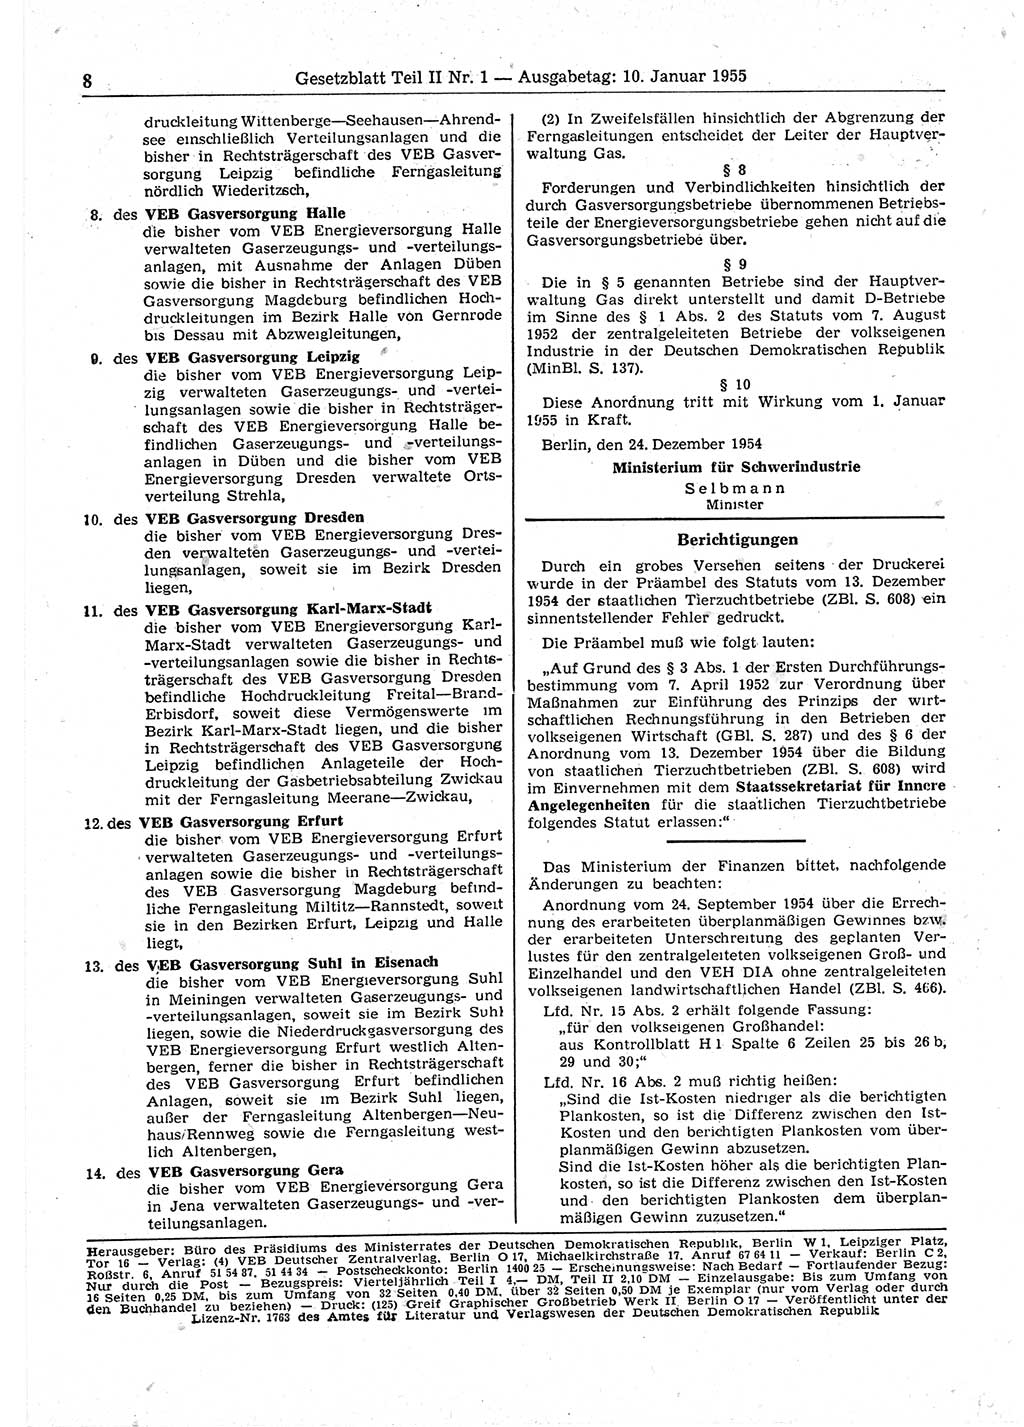 Gesetzblatt (GBl.) der Deutschen Demokratischen Republik (DDR) Teil ⅠⅠ 1955, Seite 8 (GBl. DDR ⅠⅠ 1955, S. 8)